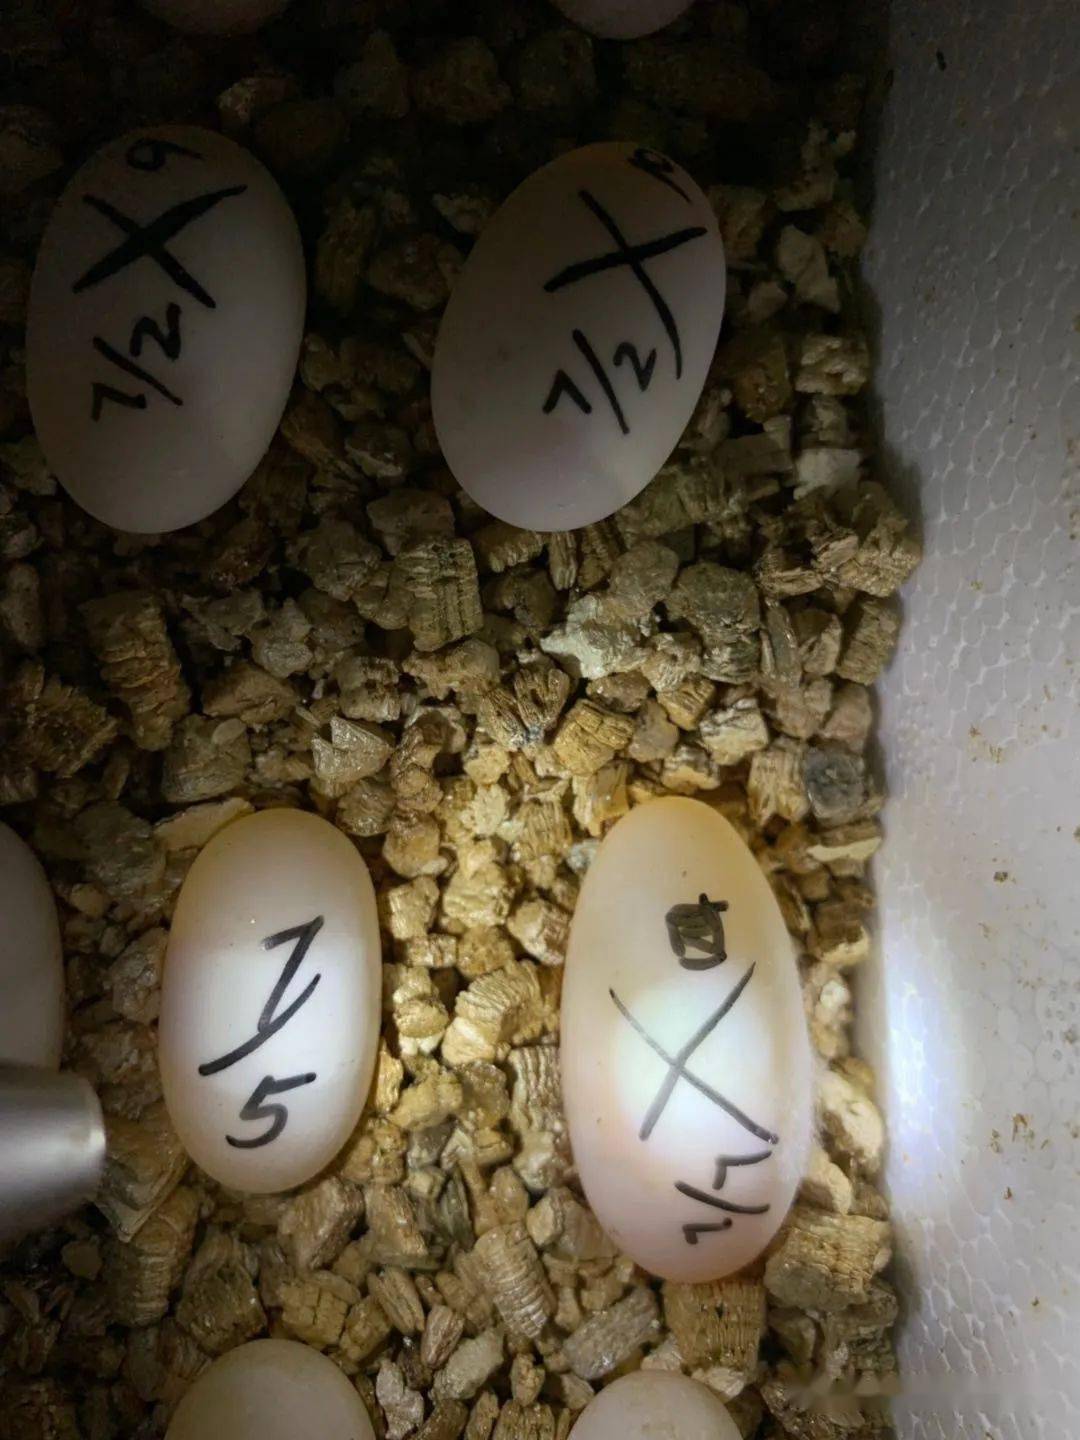 (图文详解)龟蛋孵化过程中如何挑出"坏蛋"